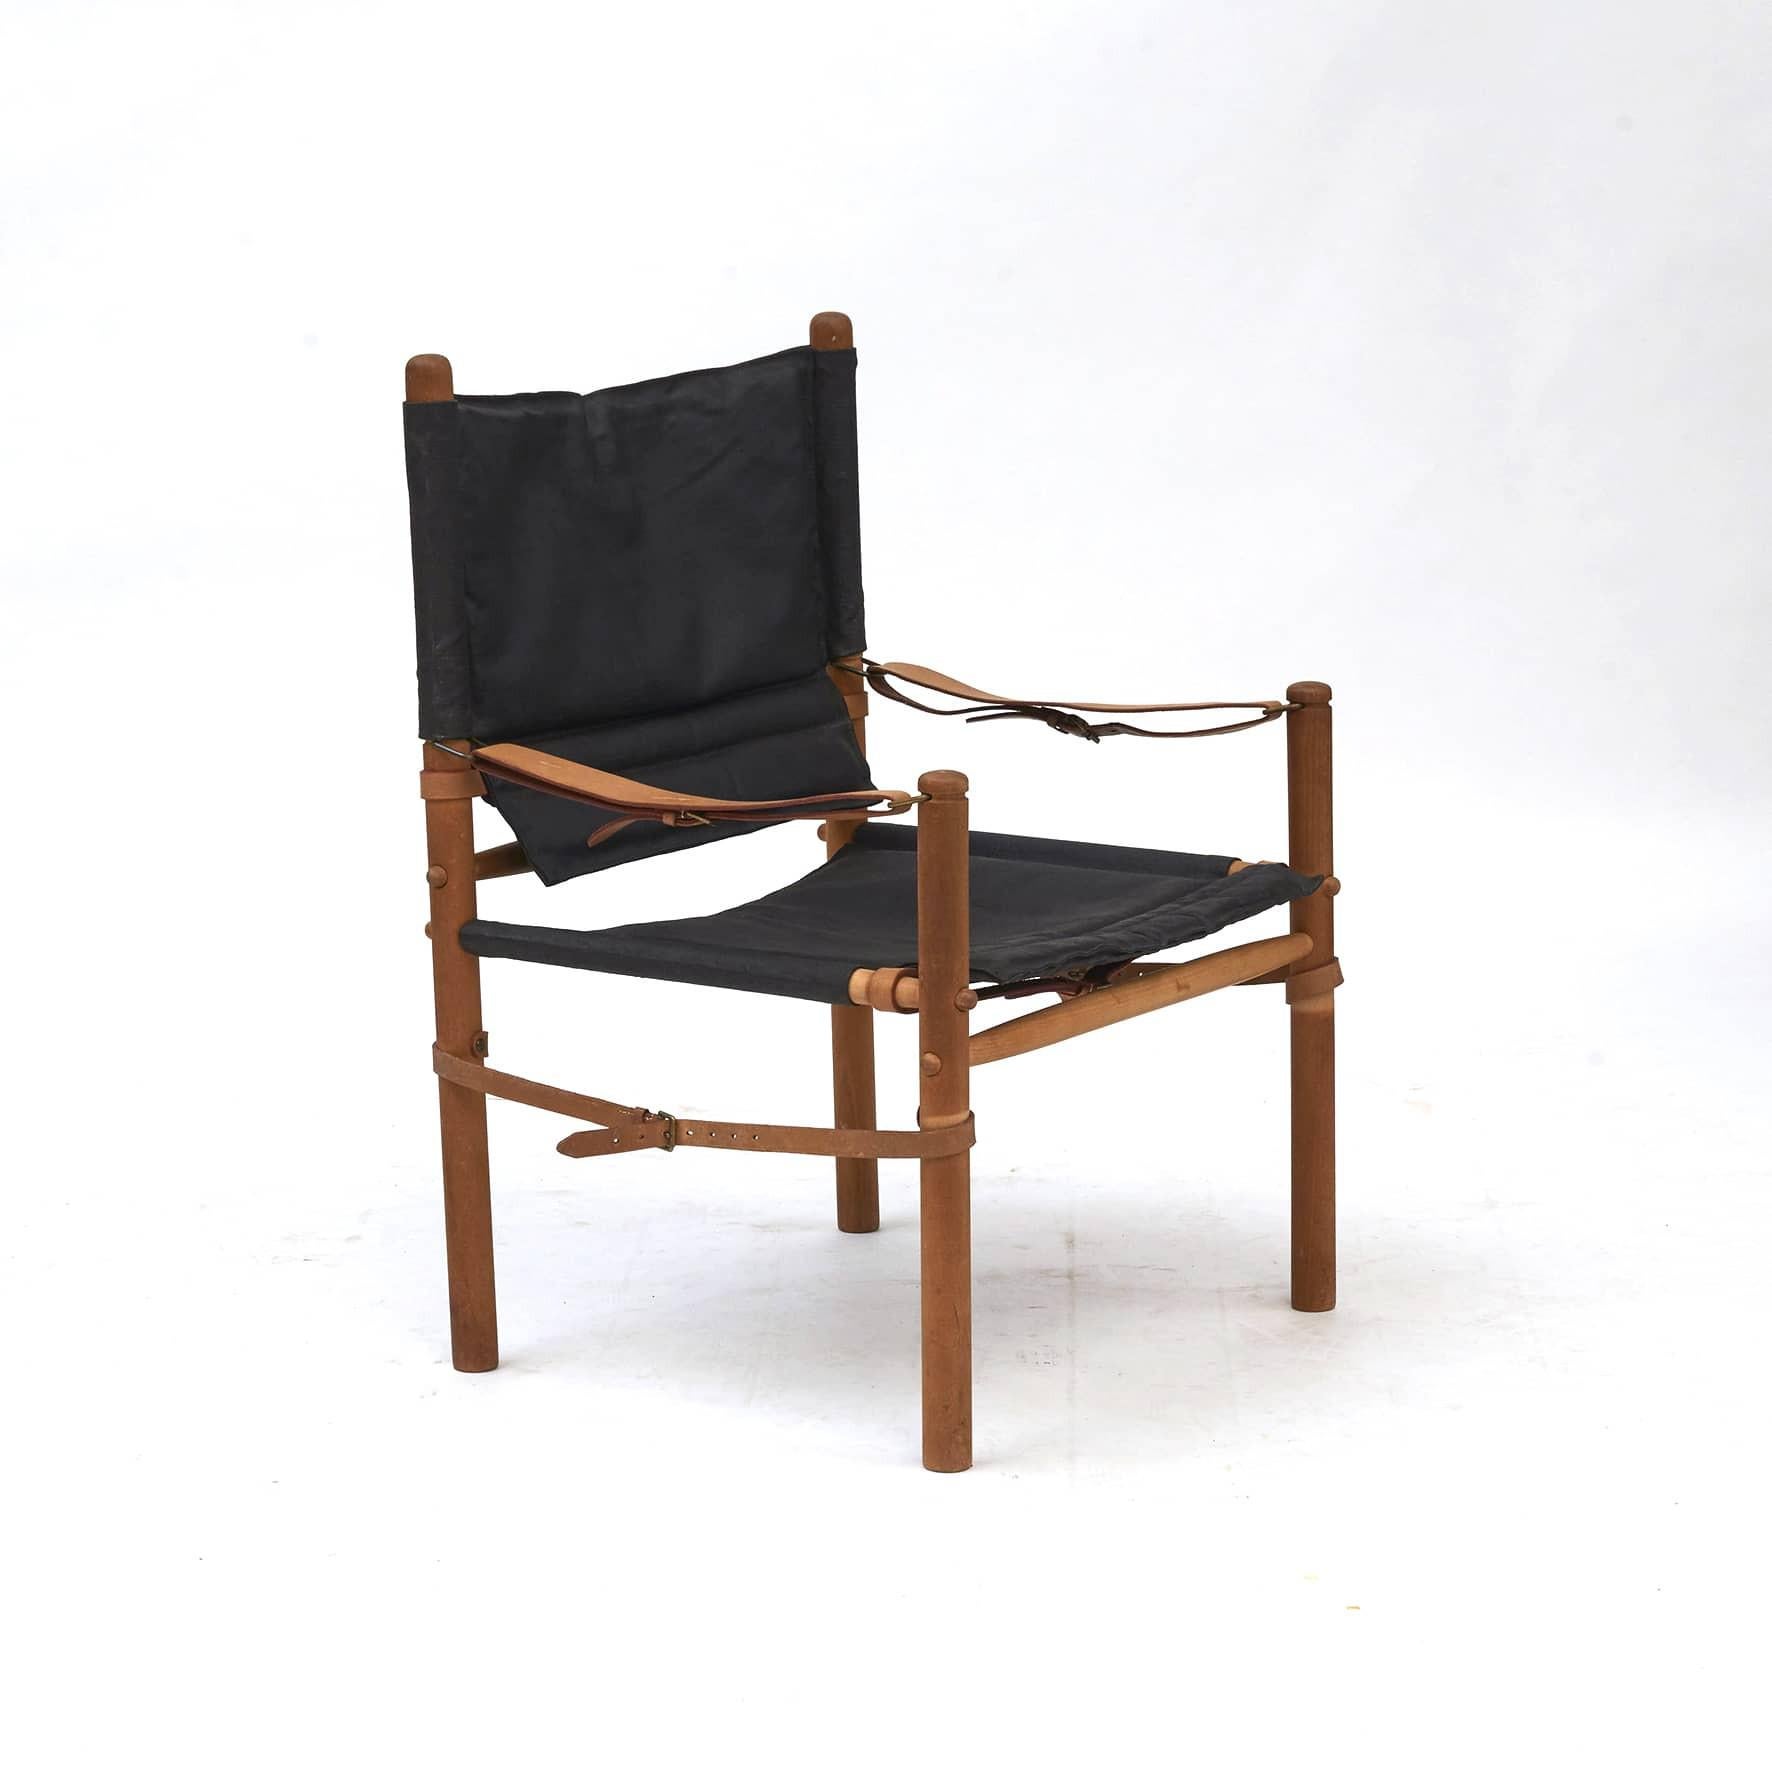 Ein Paar Oasis Safari-Stühle, entworfen von Axel Thygesen für Interna, um 1965.
Entworfen und hergestellt in den 1960er Jahren.
Gestell aus Buche mit schwarzer Sitzfläche aus Segeltuch.

Unberührt in gutem Originalzustand.
Wird als Paar